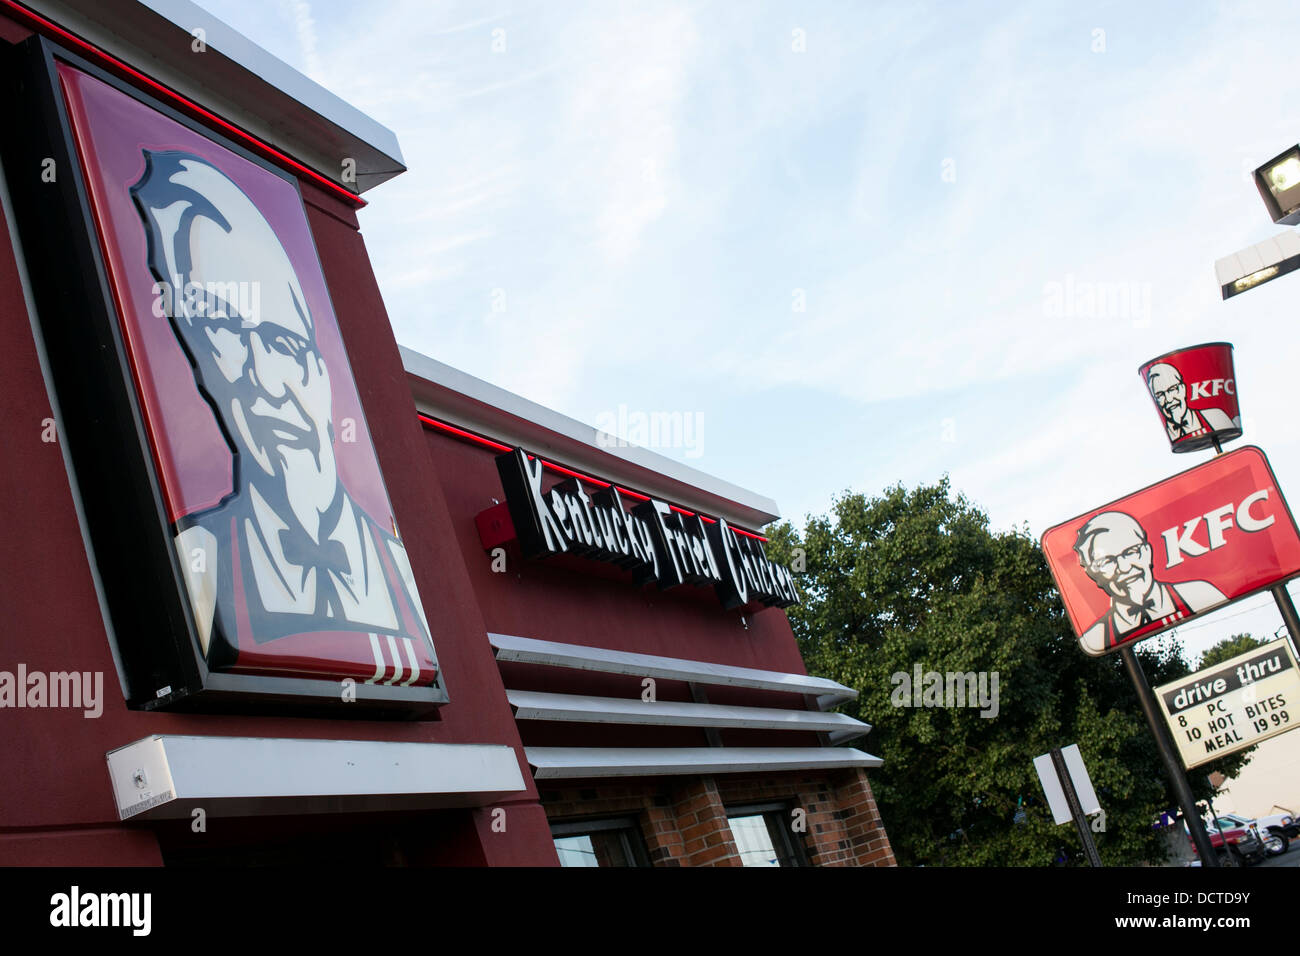 A Kentucky Fried Chicken (KFC) restaurant.  Stock Photo